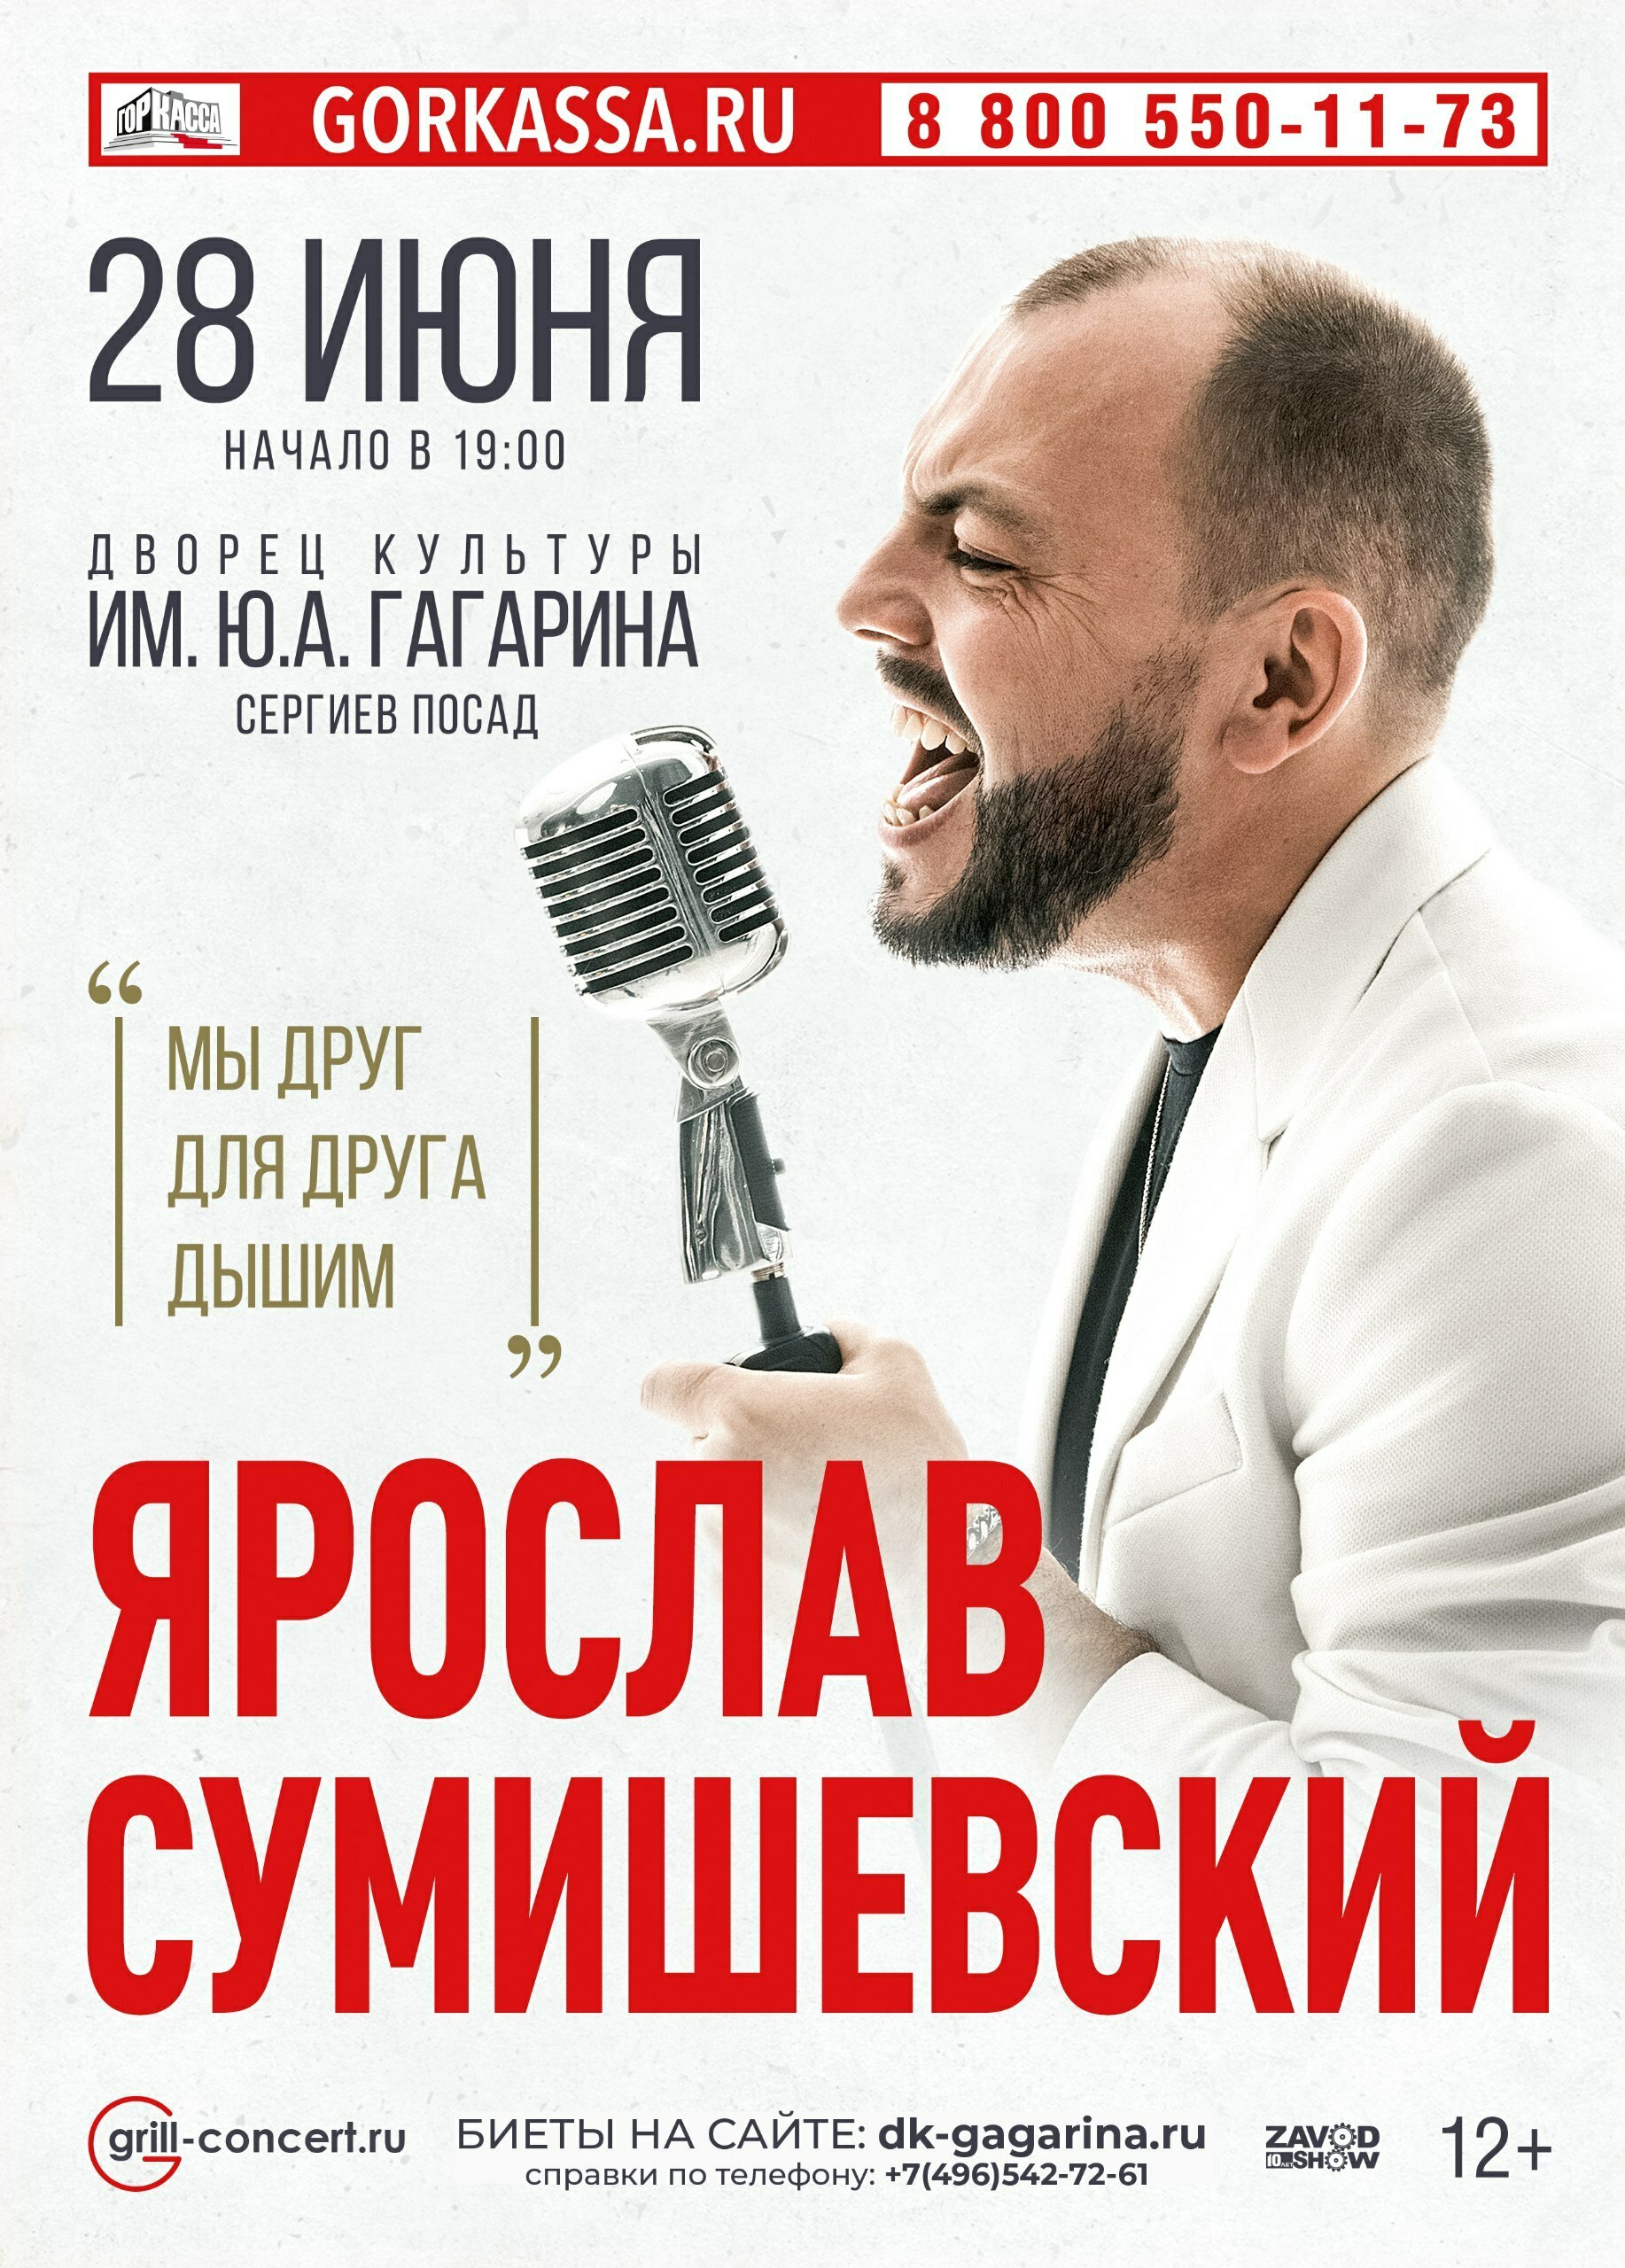 Концерт Ярослава Сумишевского в Сергиевом Посаде